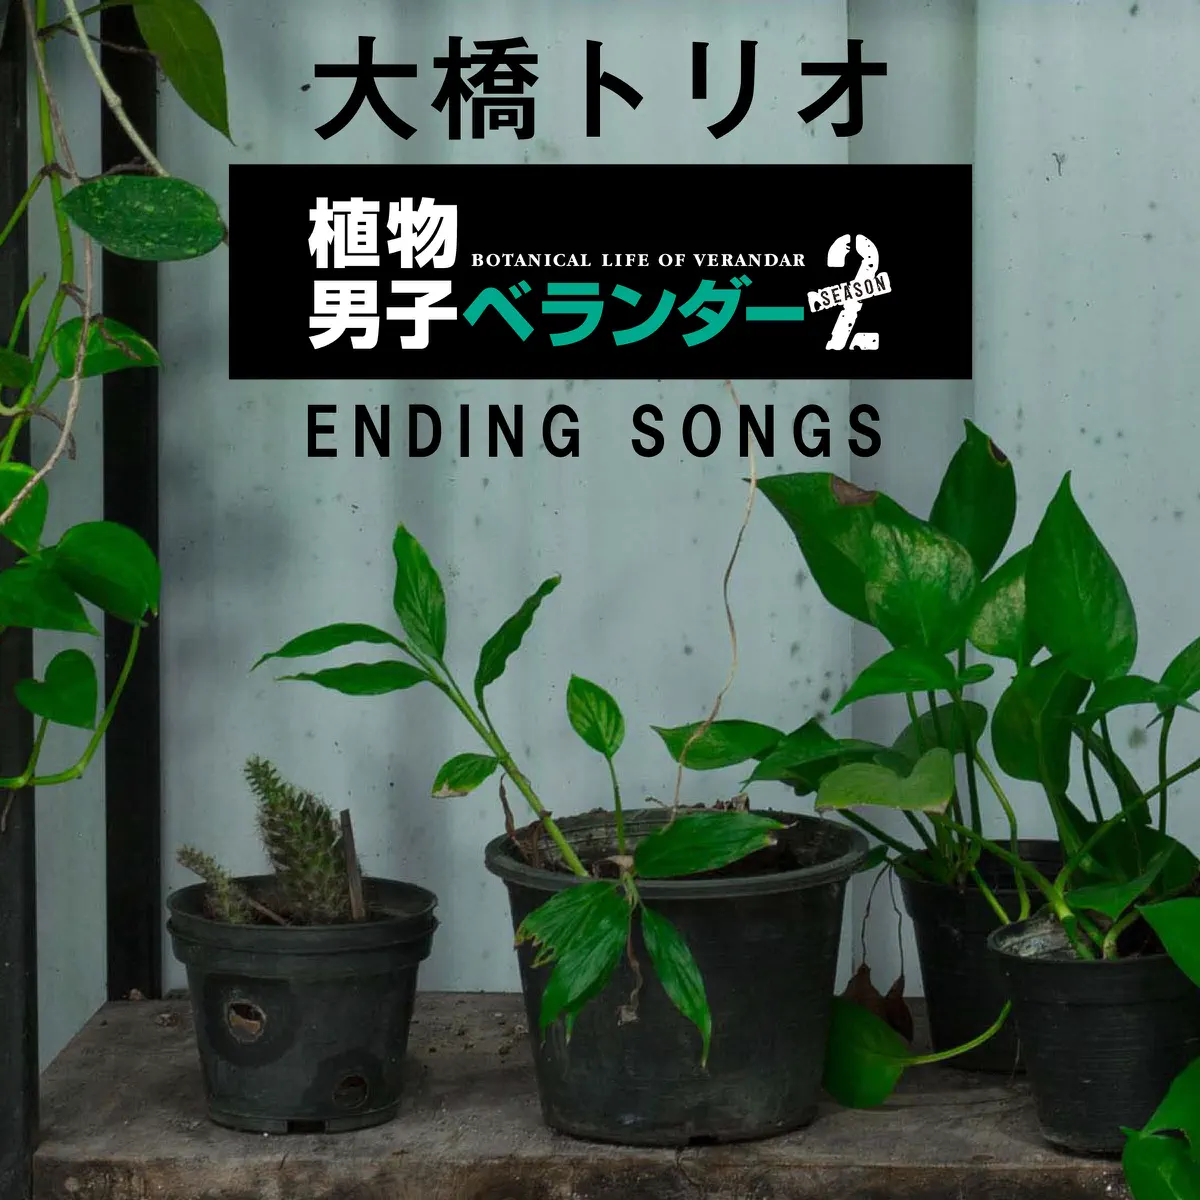 大桥トリオ - 植物男子ベランダーSEASON2 ENDING SONGS (2018) [iTunes Plus AAC M4A]-新房子